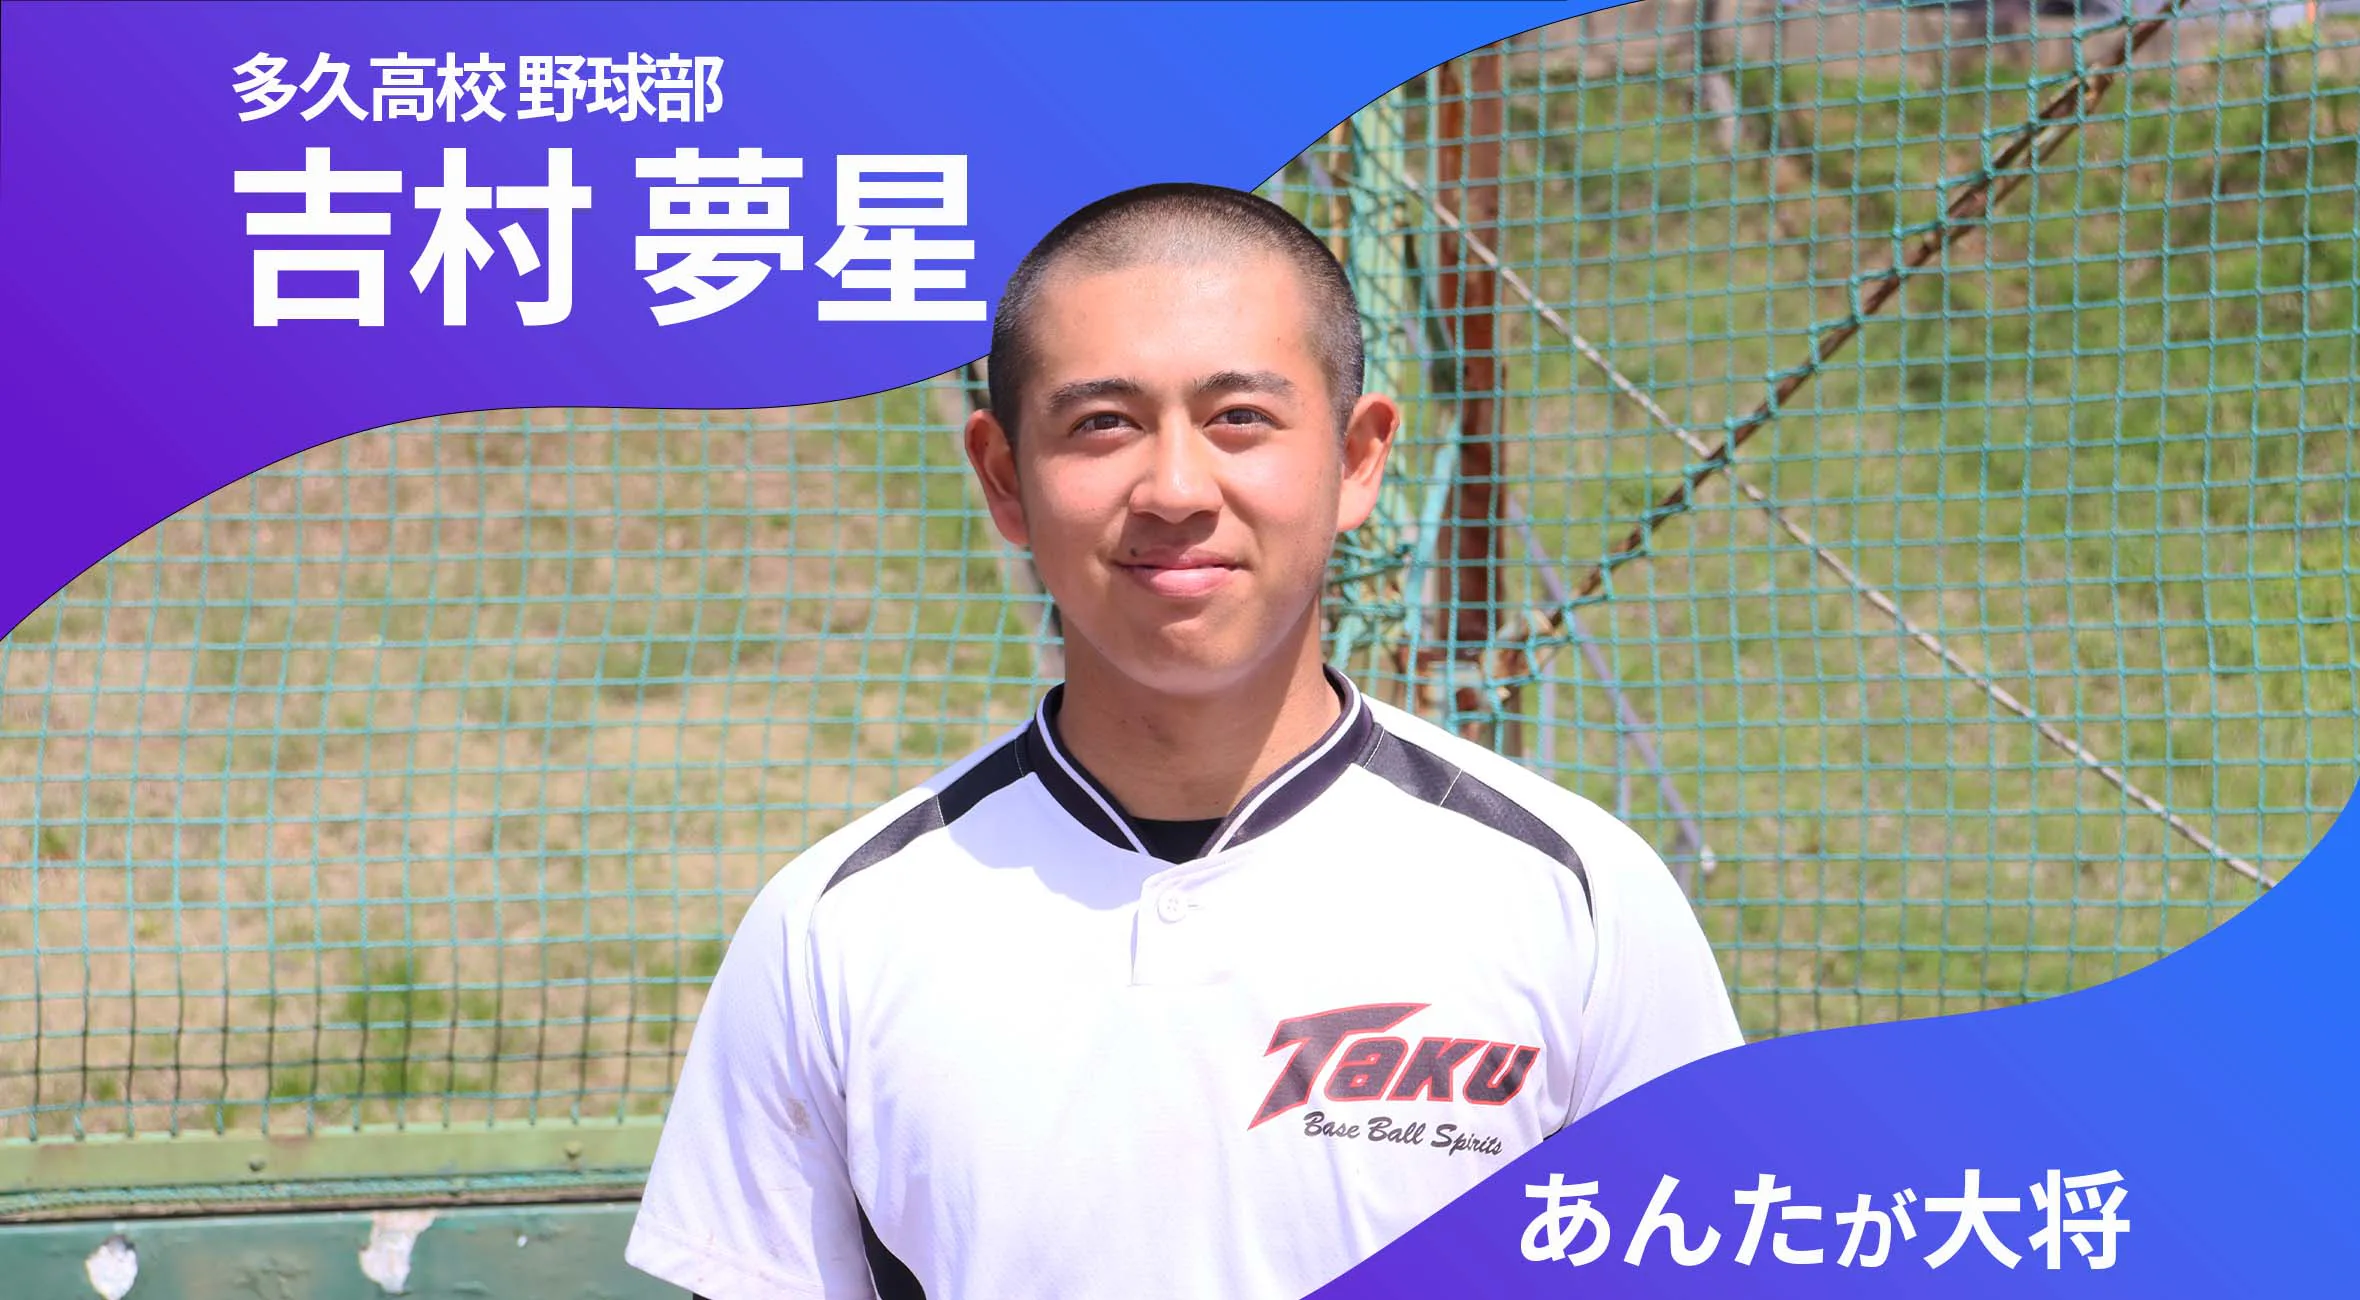 あんたが大将 多久高校野球部 主将 吉村夢星 選手（3年）「多久市を盛り上げられるチームに」